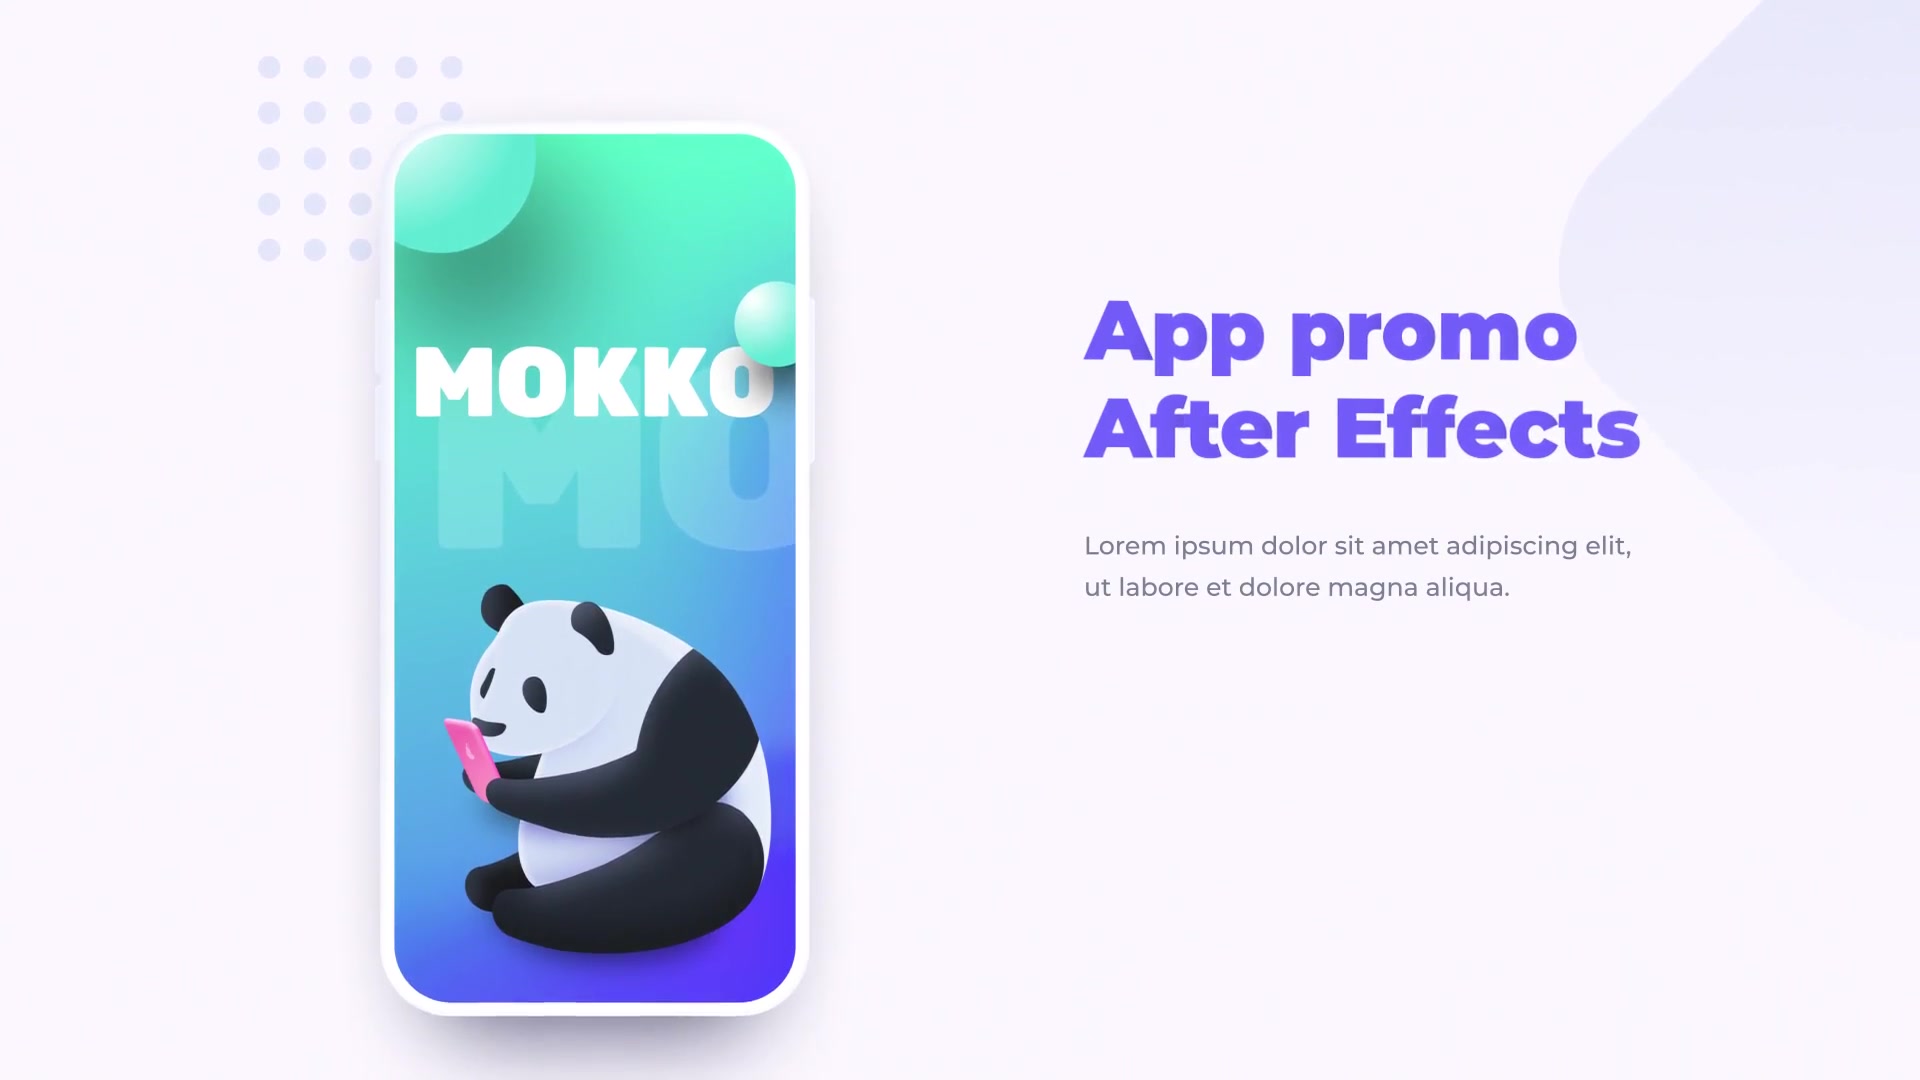 Mokko App Promo Mock up Mobile Presentation Videohive 24144177 After Effects Image 2